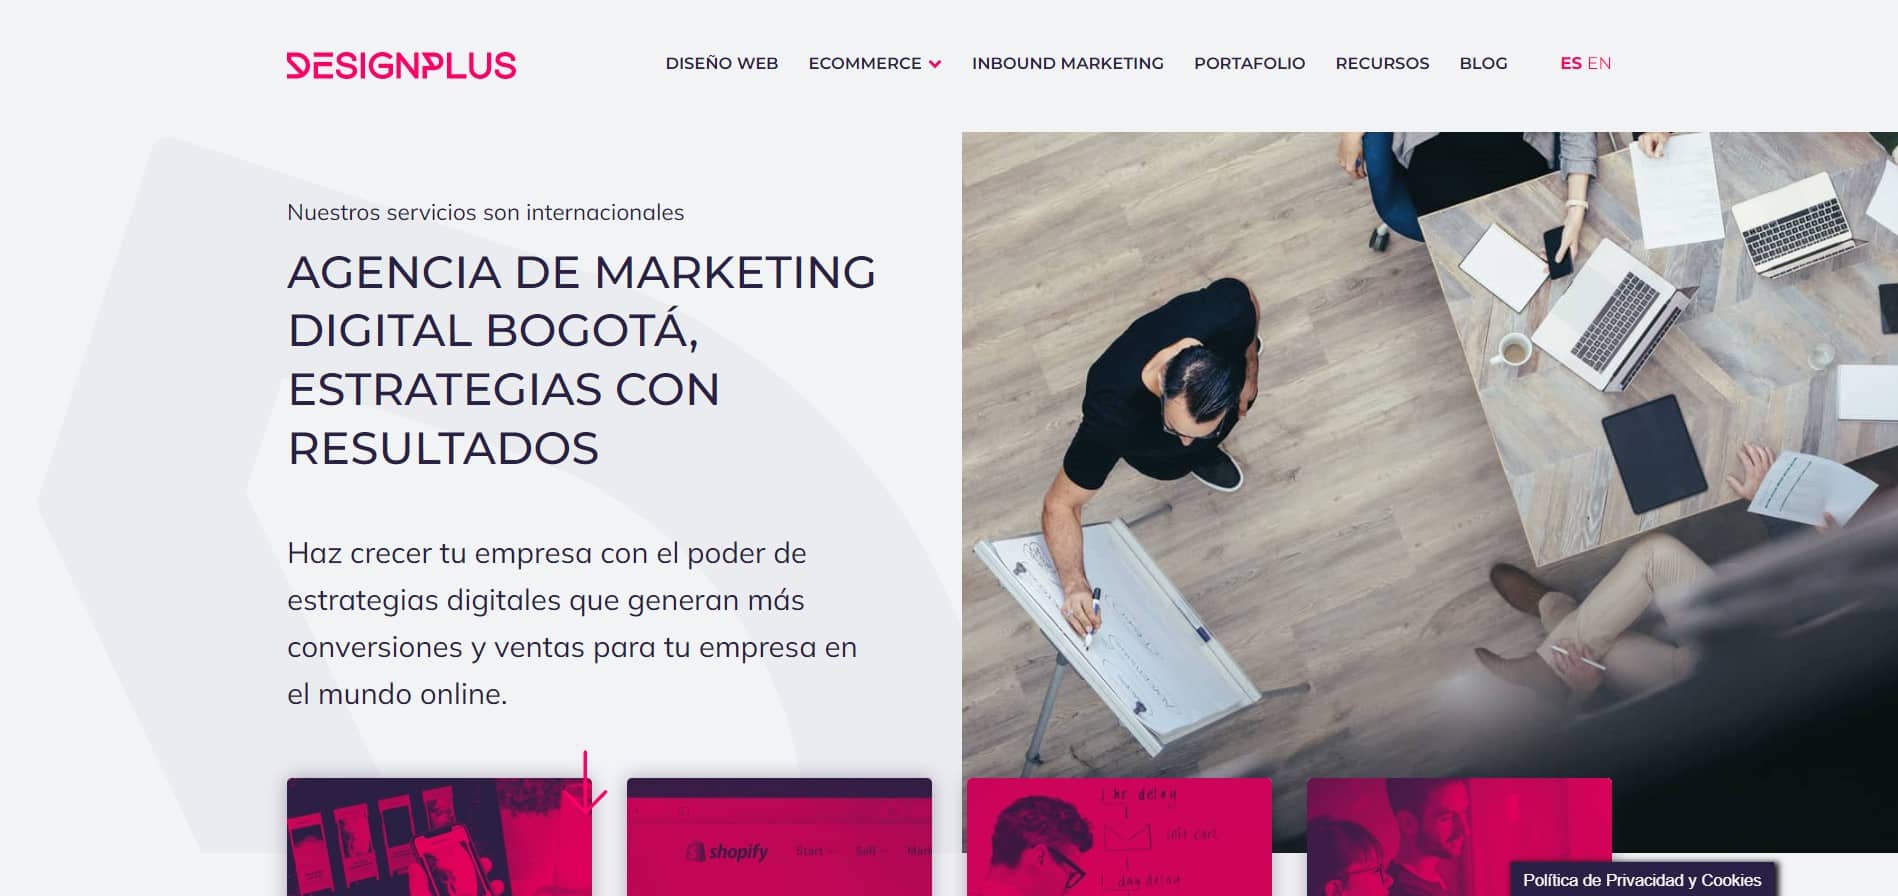 agencia de marketing en colombia Design Plus